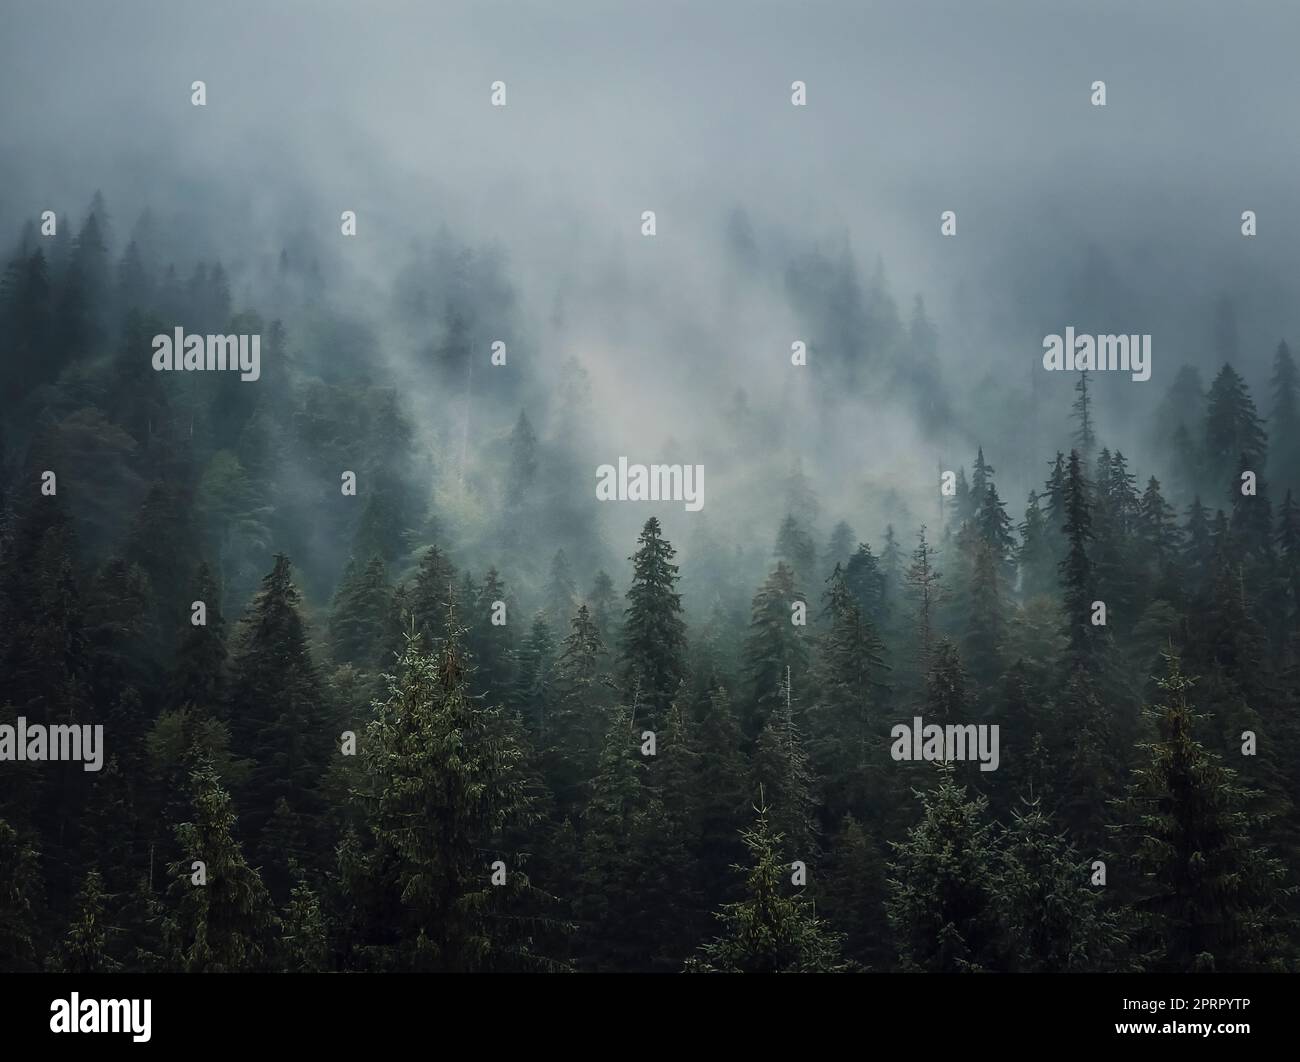 Sonnenbeleuchteter, nebiger Tannenwald-Hintergrund. Friedliche und stimmungsvolle Szene mit Dunstwolken, die sich über den Nadelbäumen bewegen. Natürliche Landschaft mit Pinienwäldern auf den bergigen Hügeln bedeckt mit Nebel Stockfoto